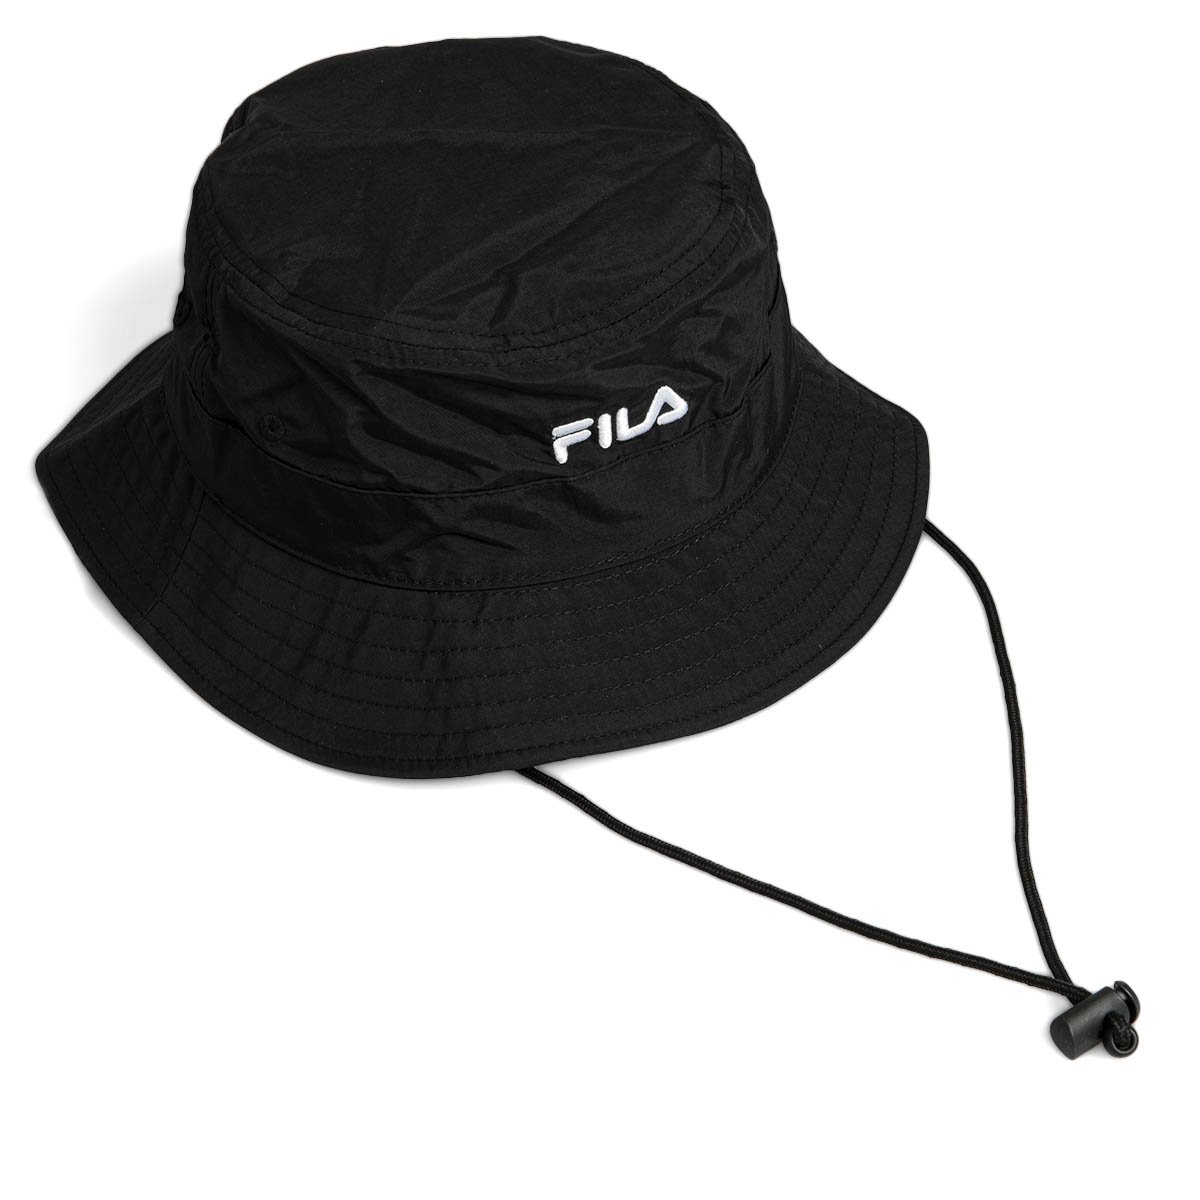 Fila Fishing Bucket Hat black | Bludshop.com